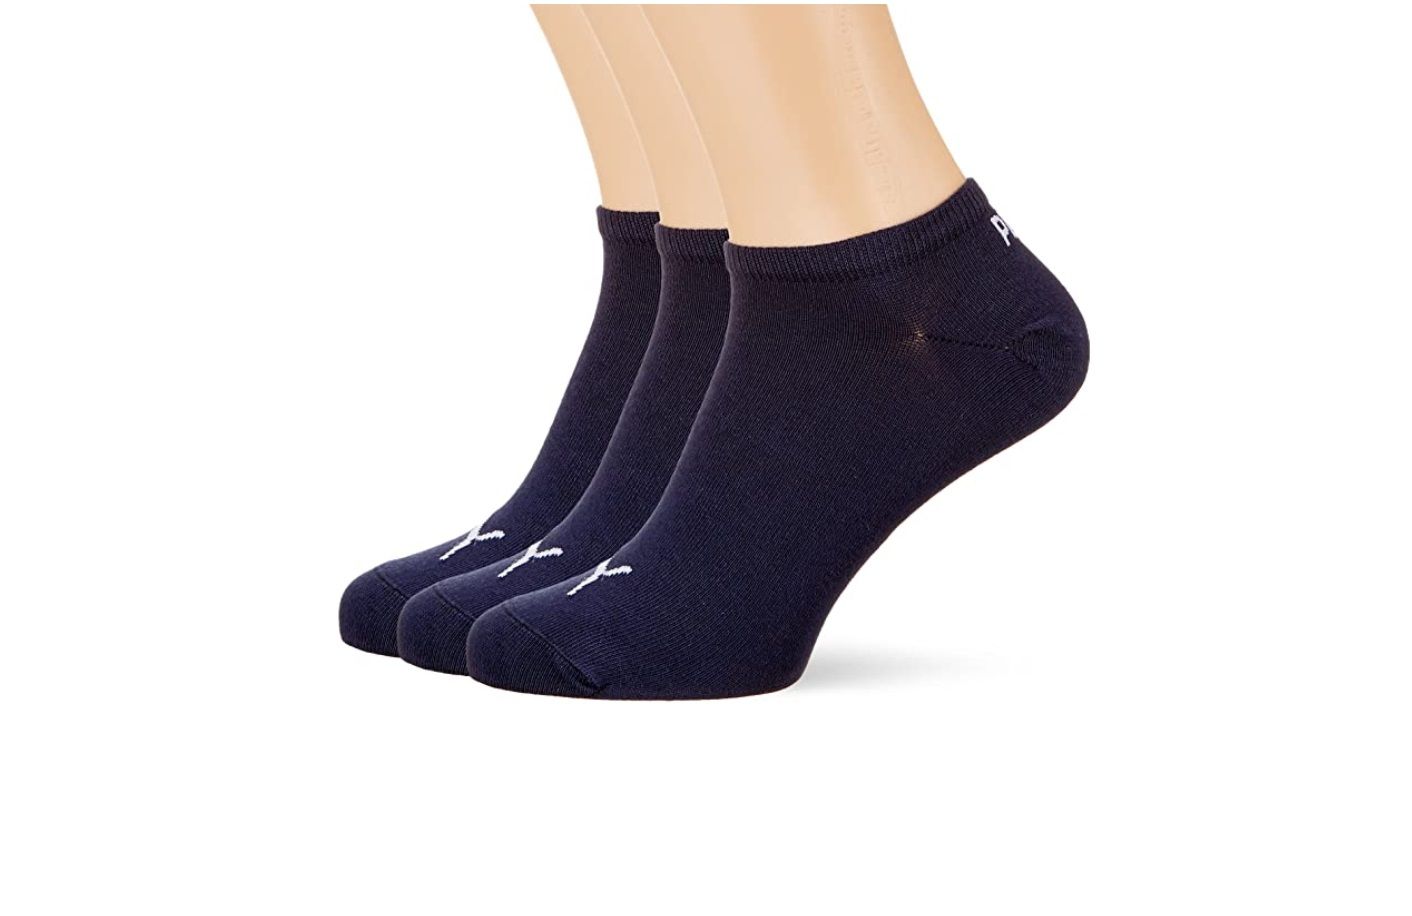 ¡Chollo! Pack de 3 pares de calcetines Puma Socks por sólo 4,99€ (PVP 8€)